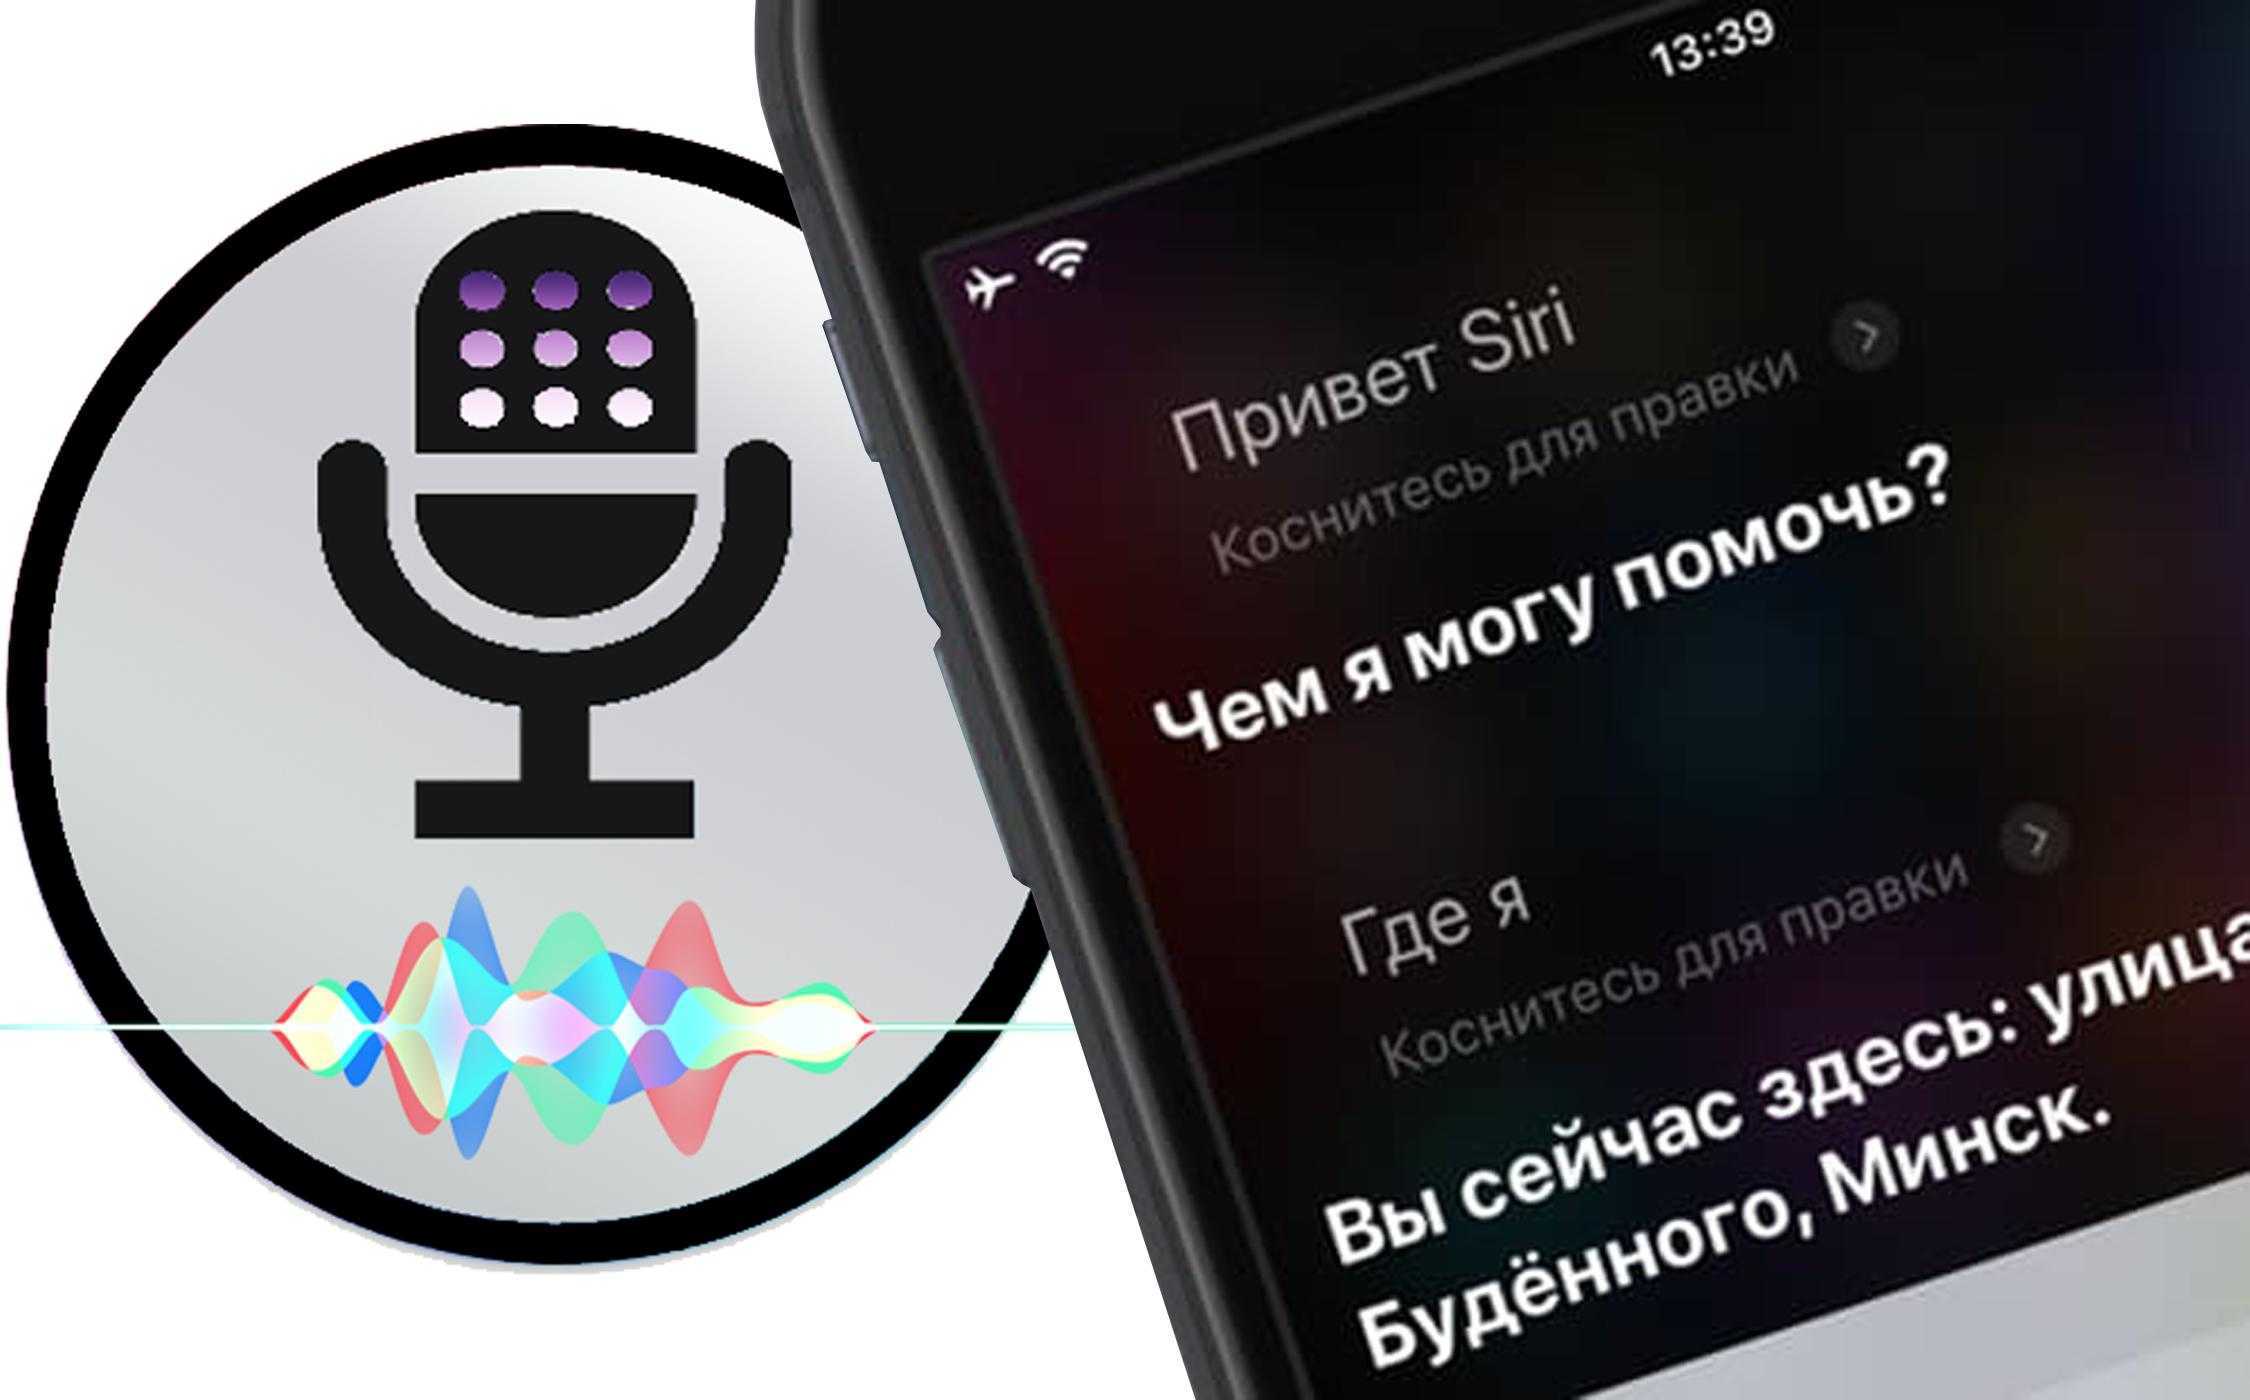 Скачать siri на андроид на русском языке бесплатно